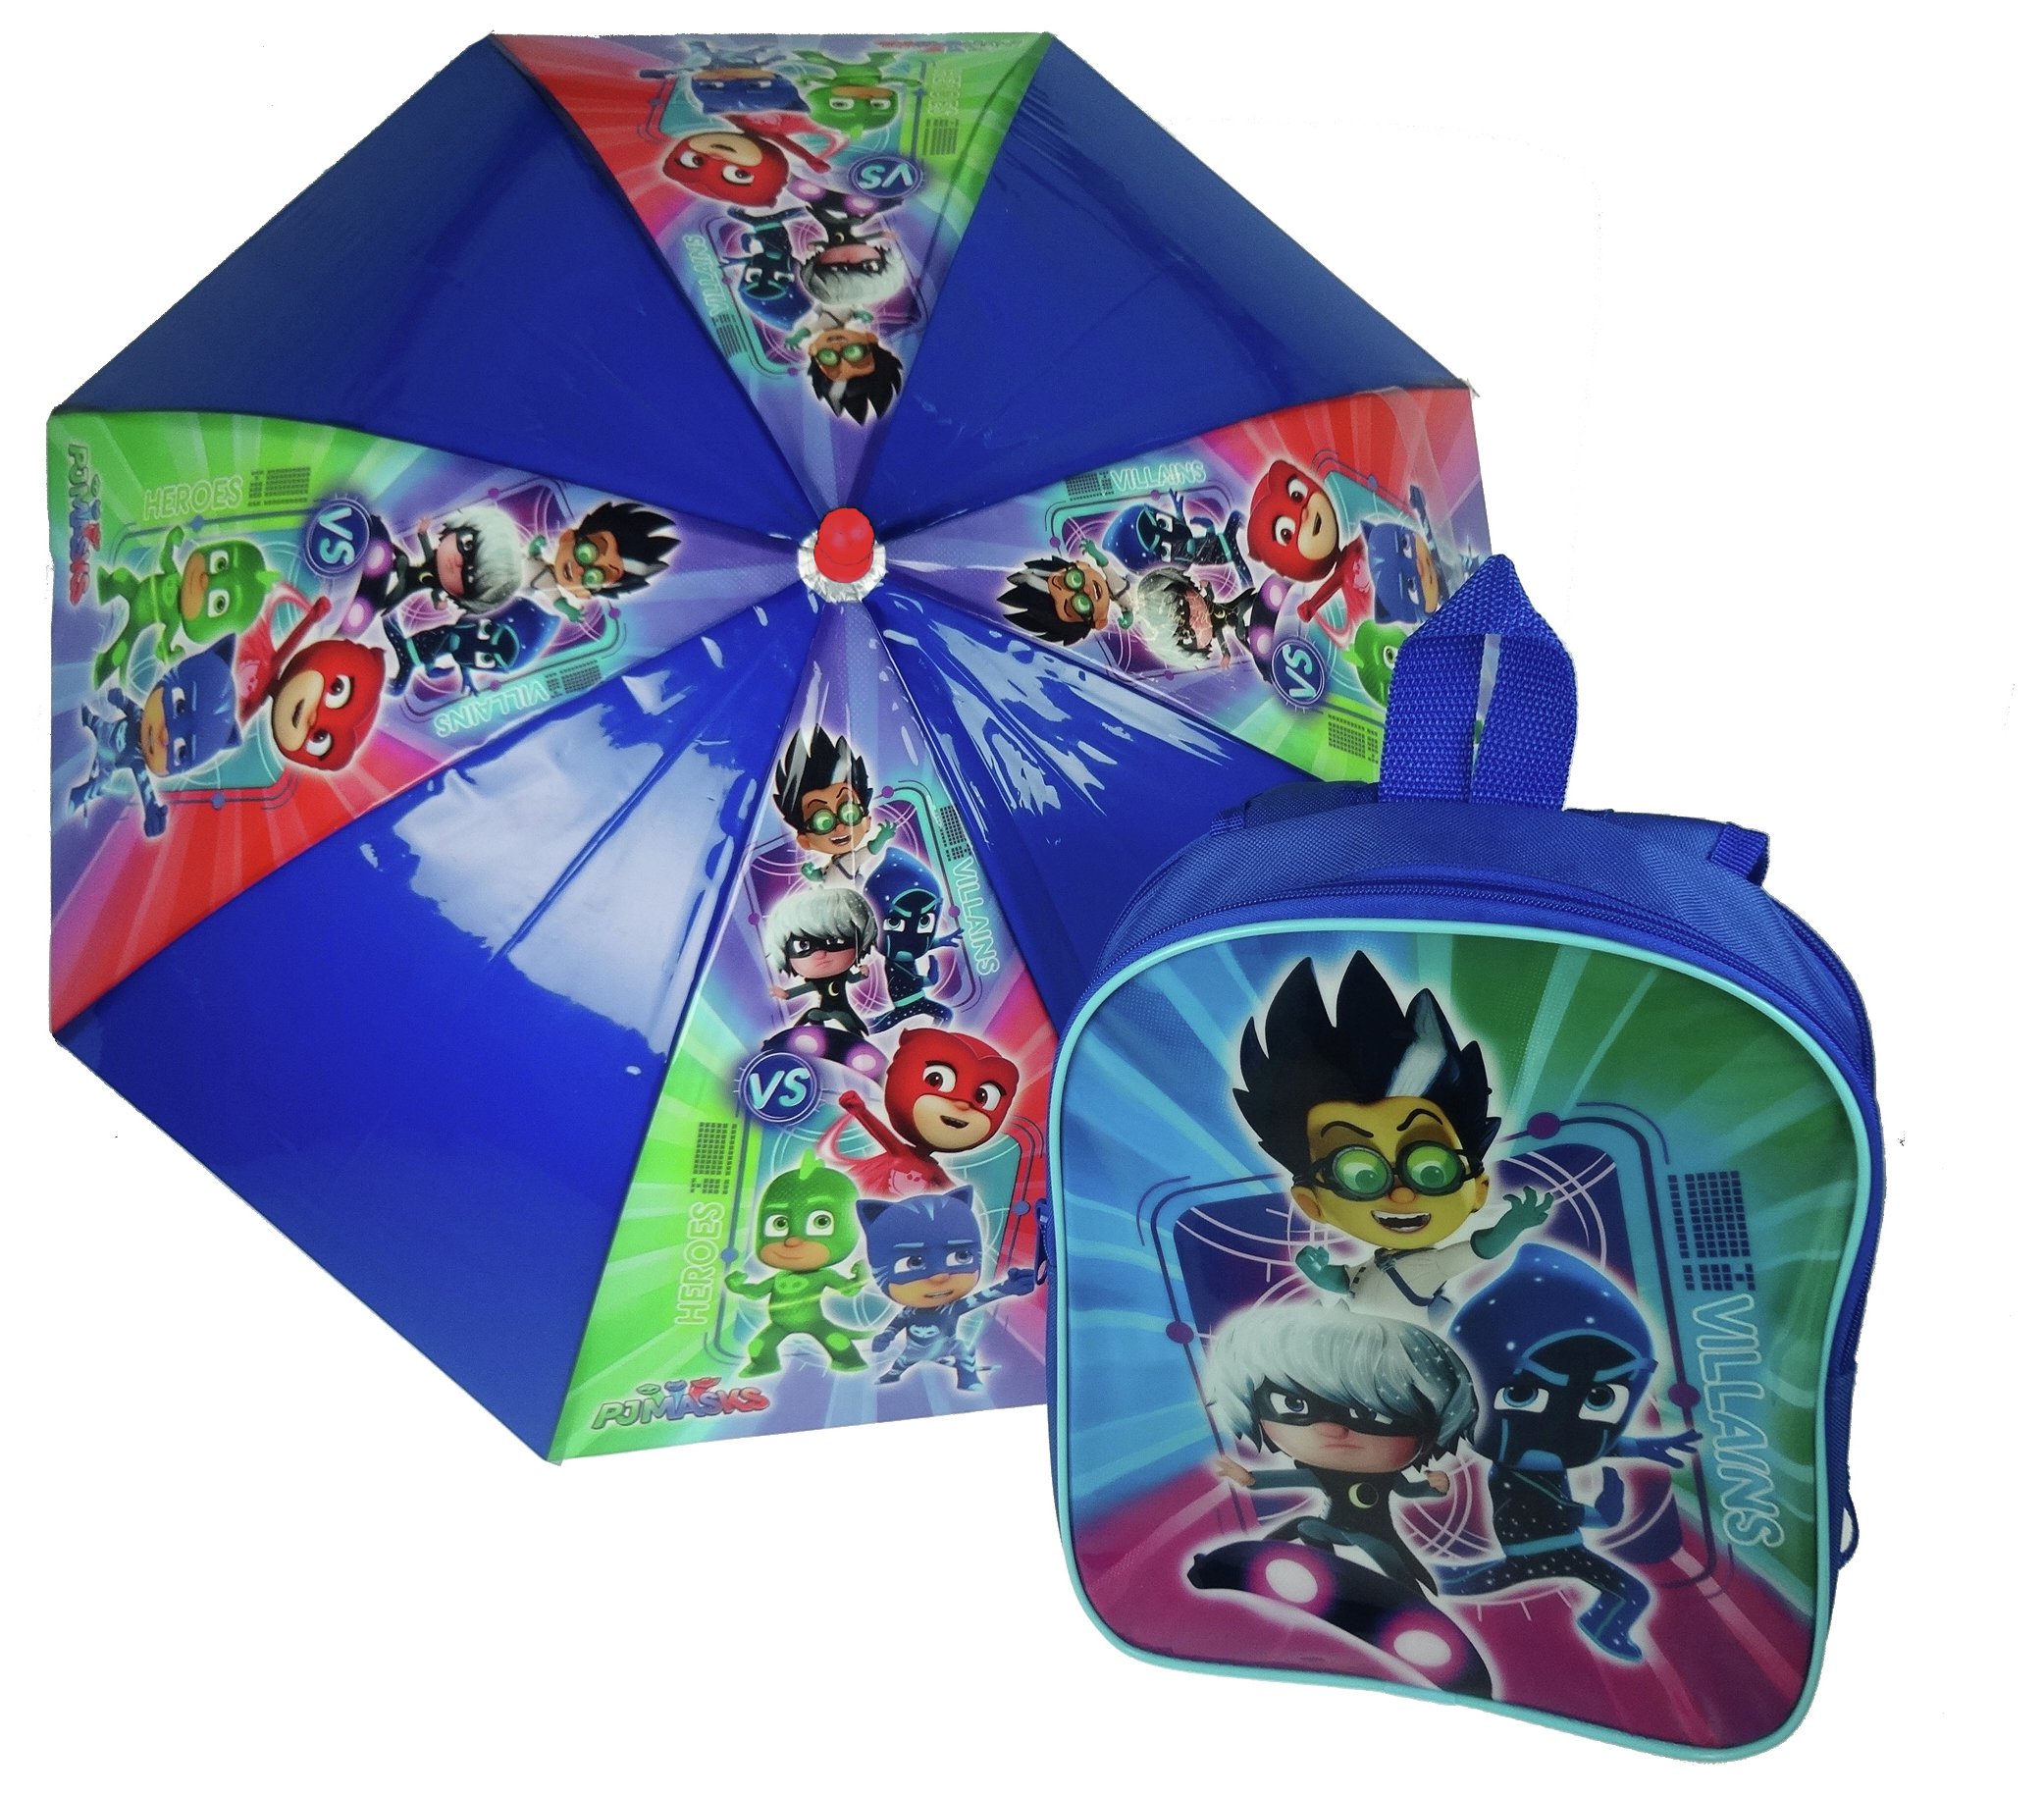 PJ Masks Reversible Backpack and Umbrella Set